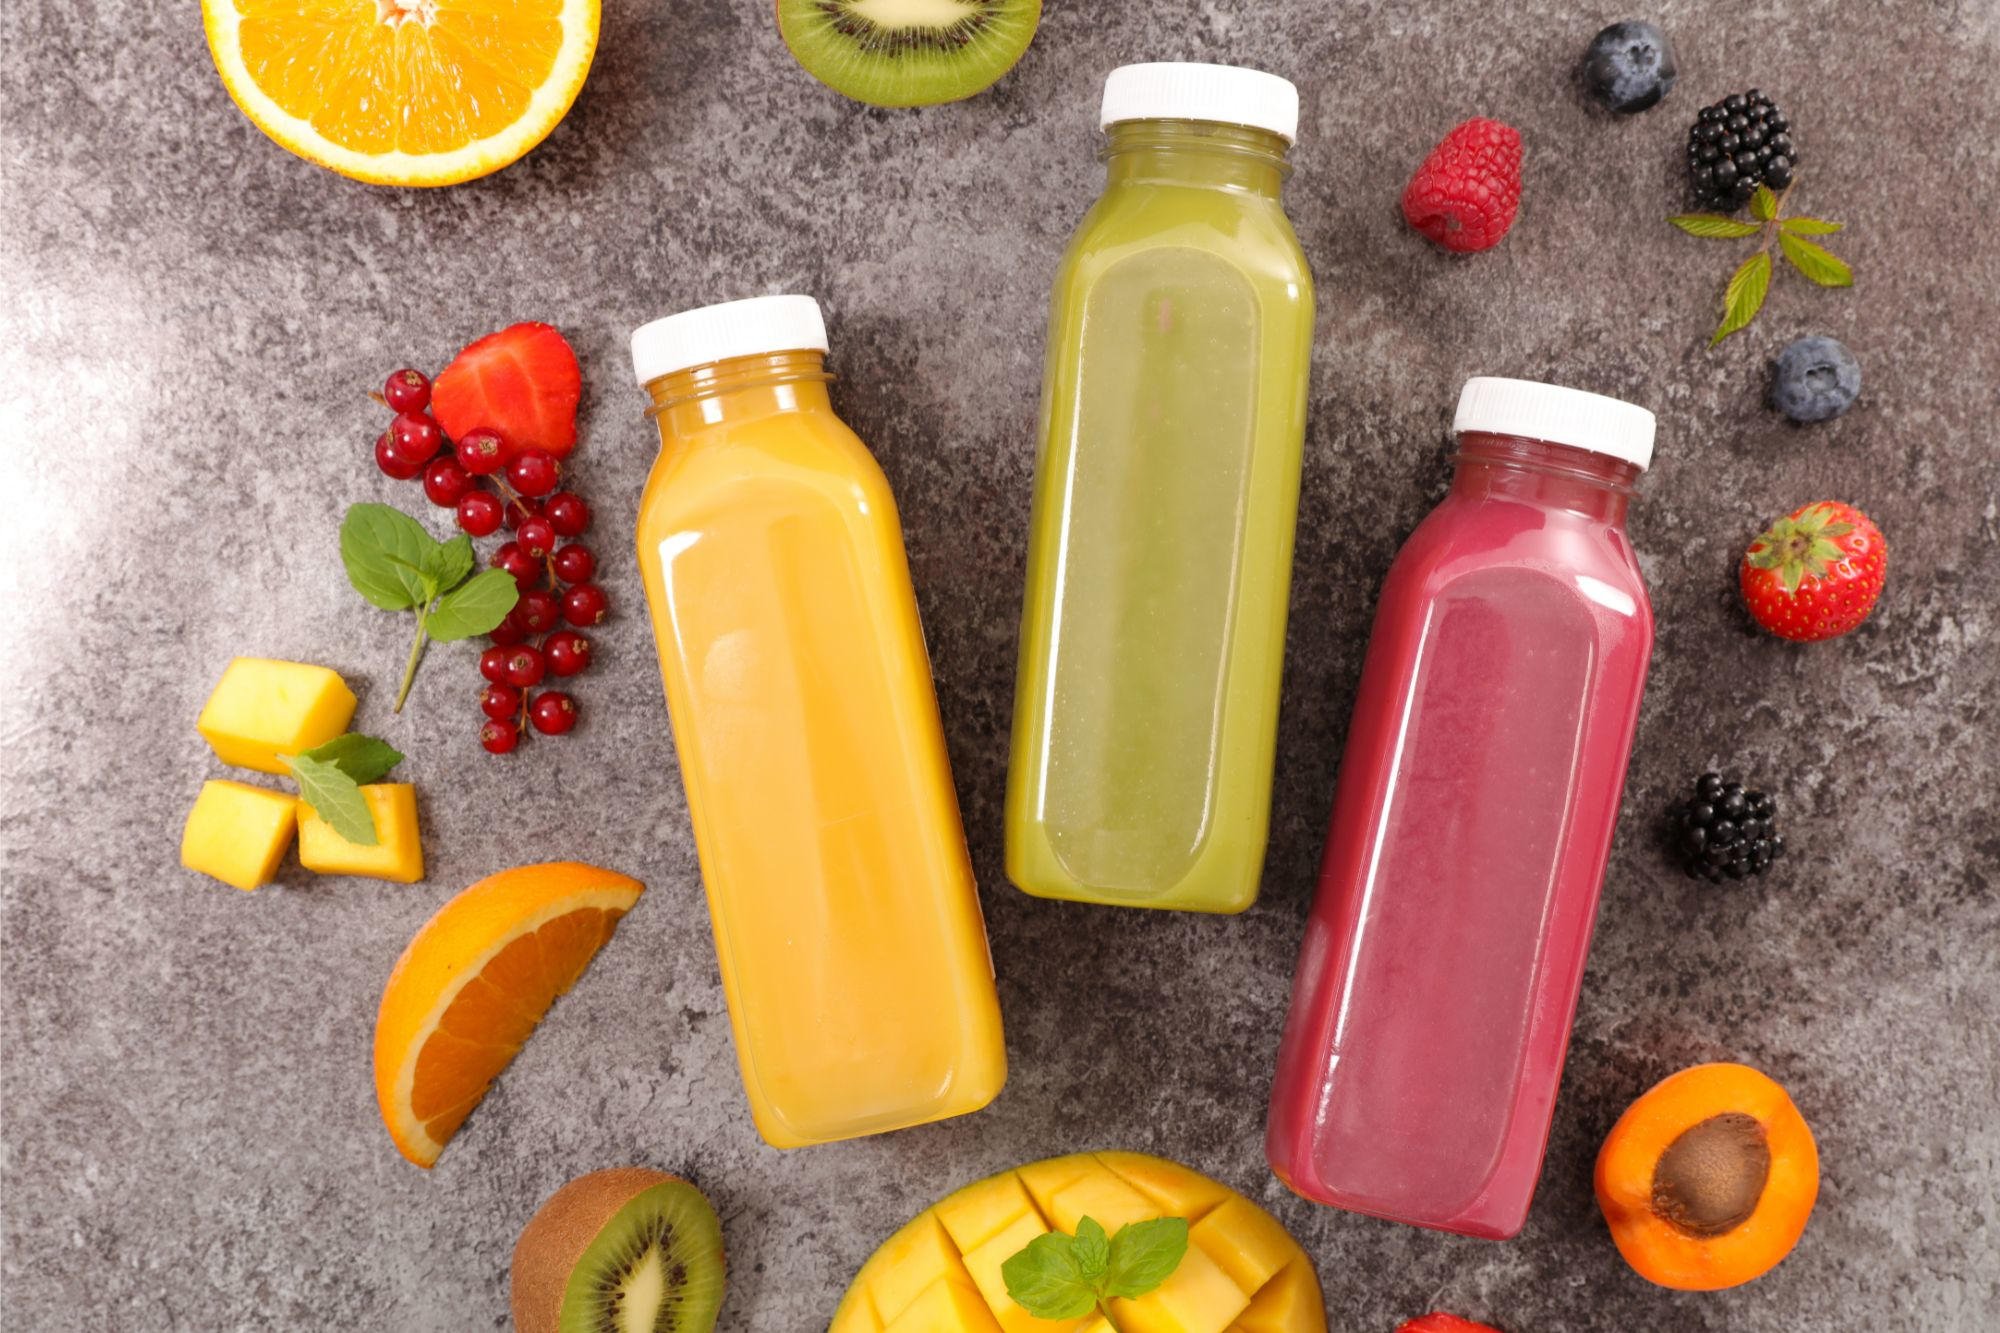 Científicos descubren niveles elevados de metales tóxicos en jugos de frutas y refrescos